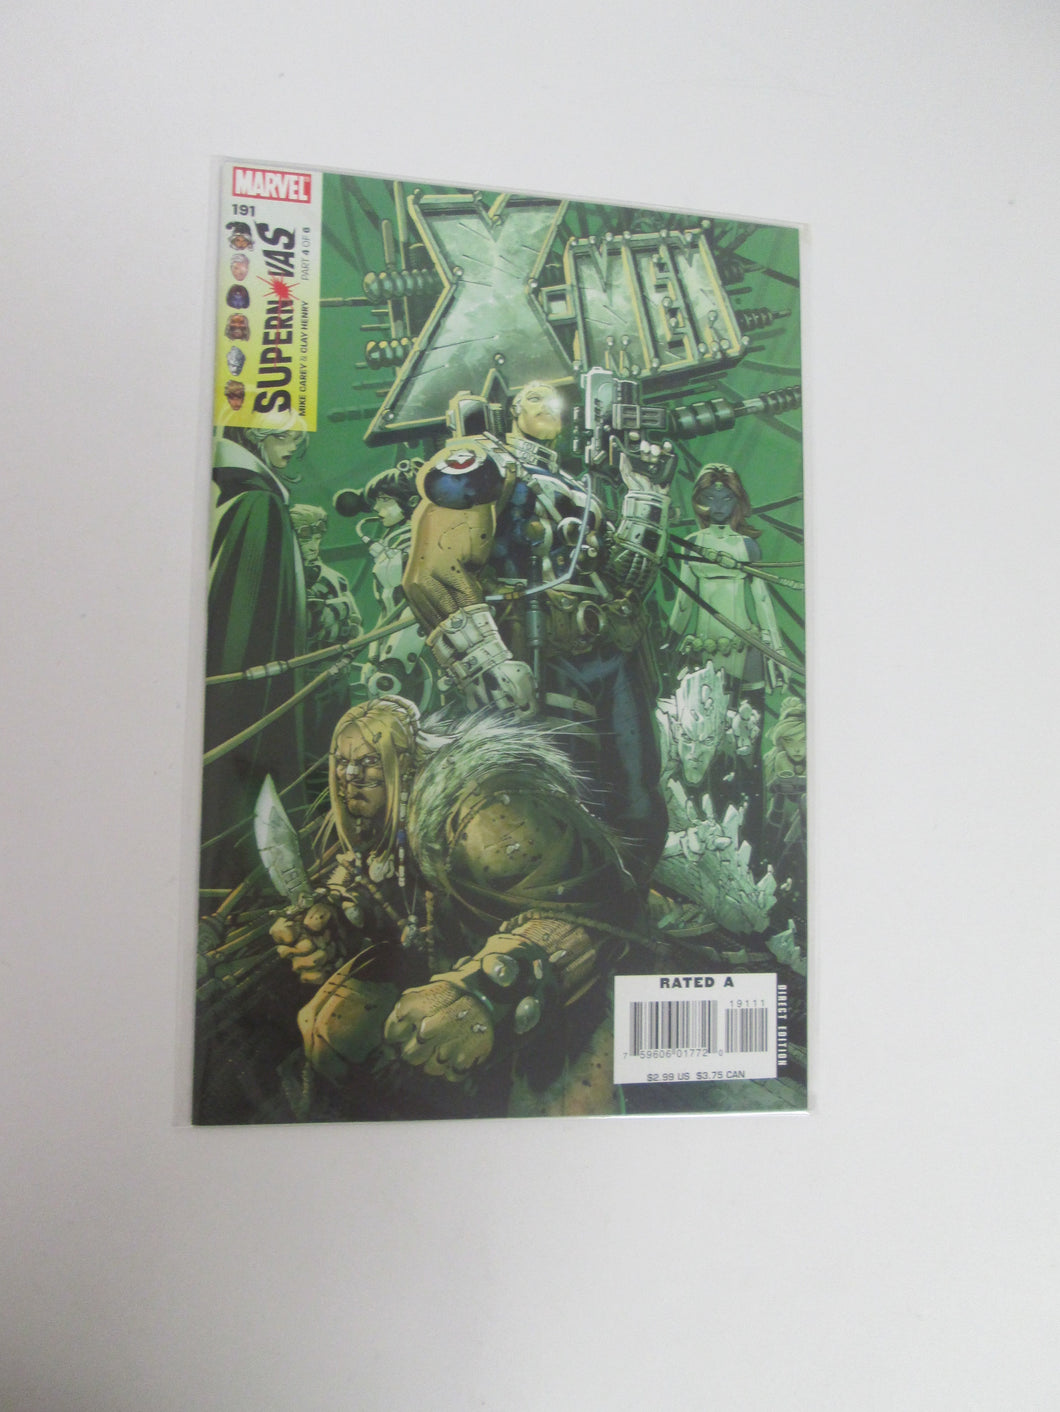 X-Men #191 (Marvel)